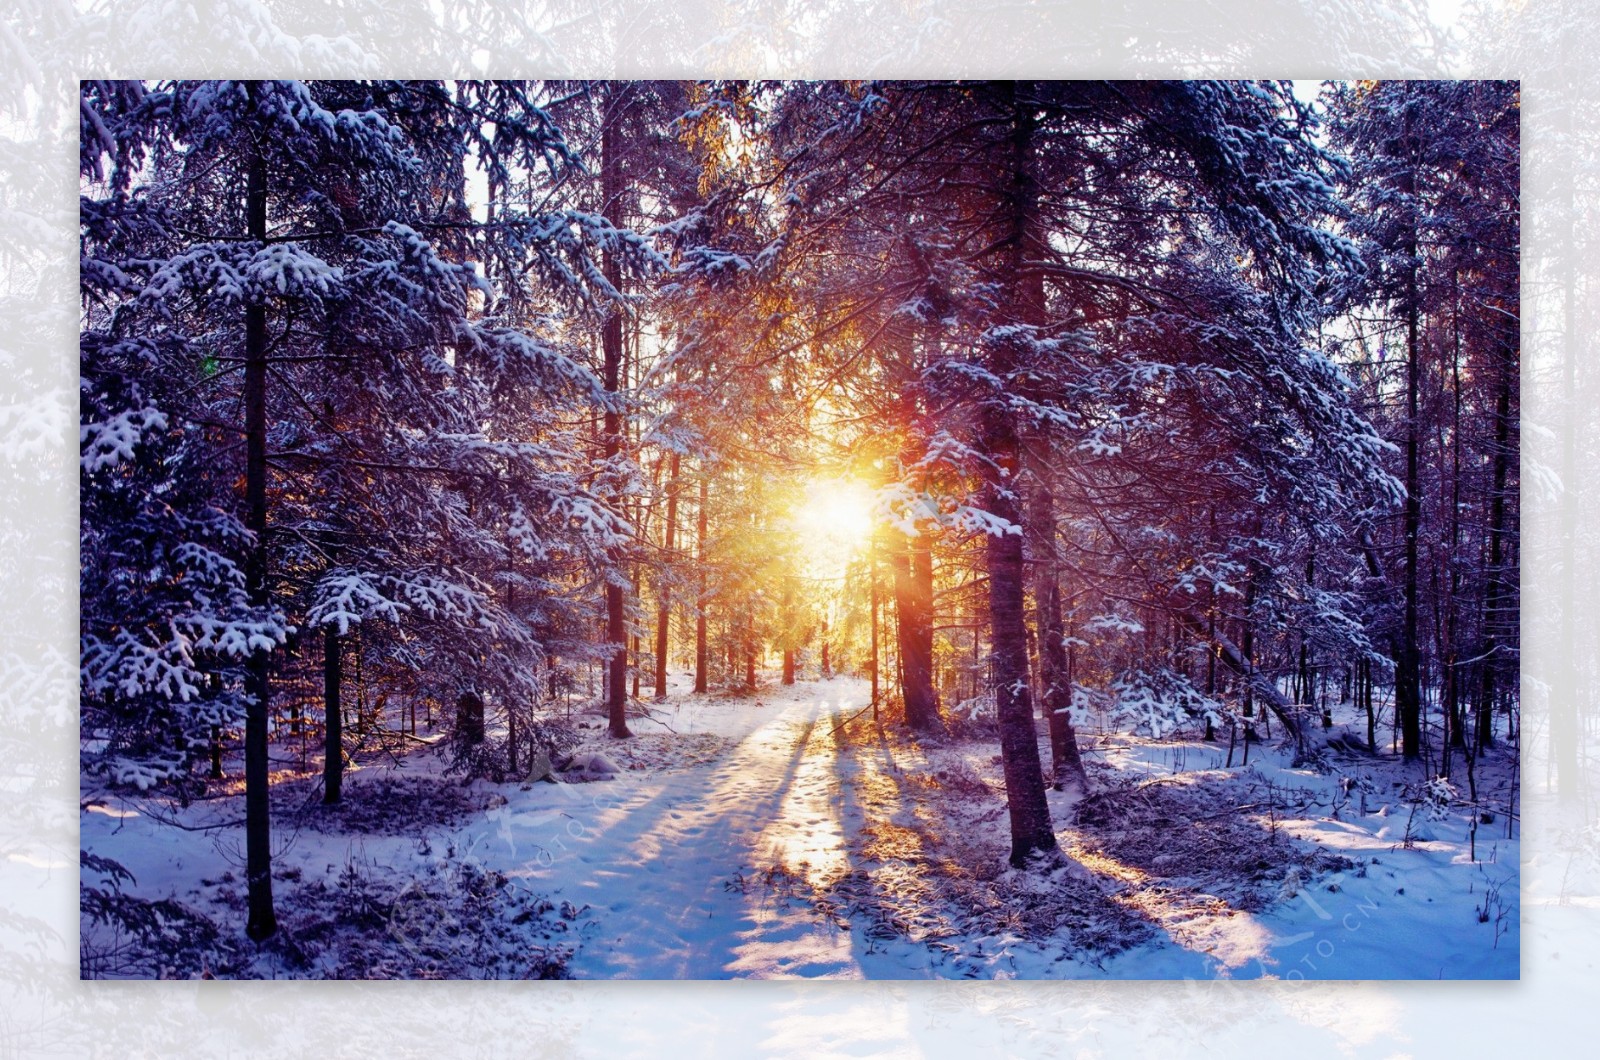 树林里的雪景图片